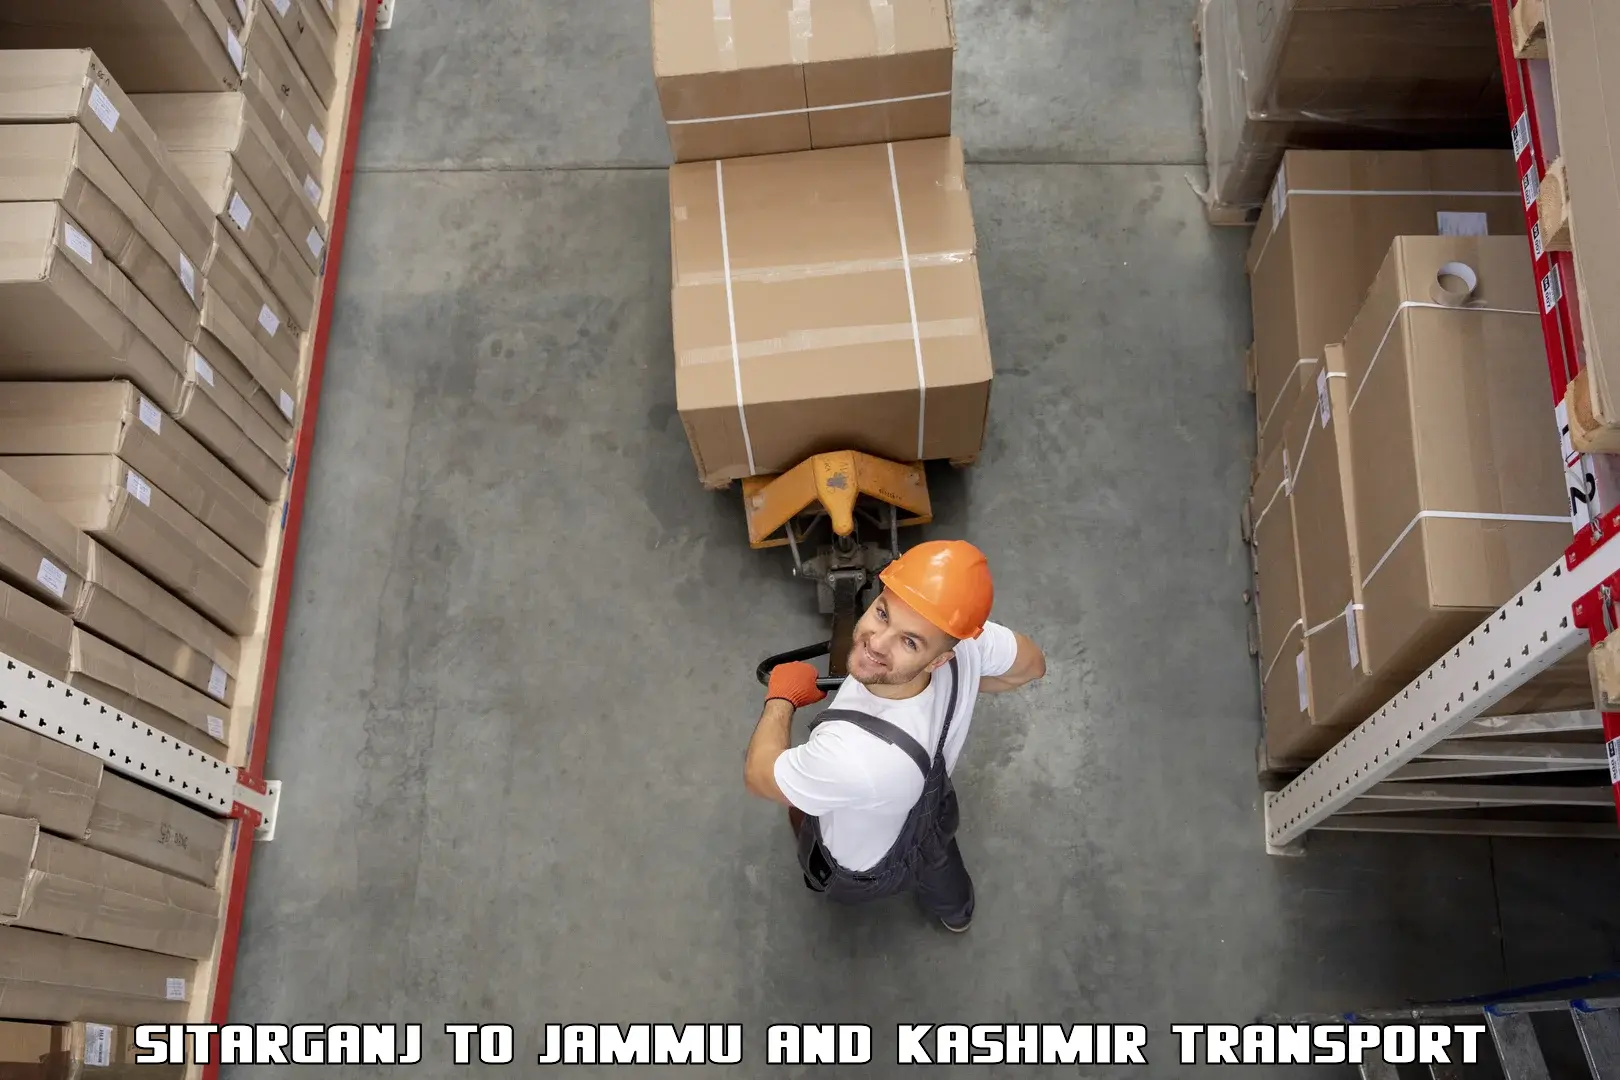 Daily transport service Sitarganj to Jammu and Kashmir